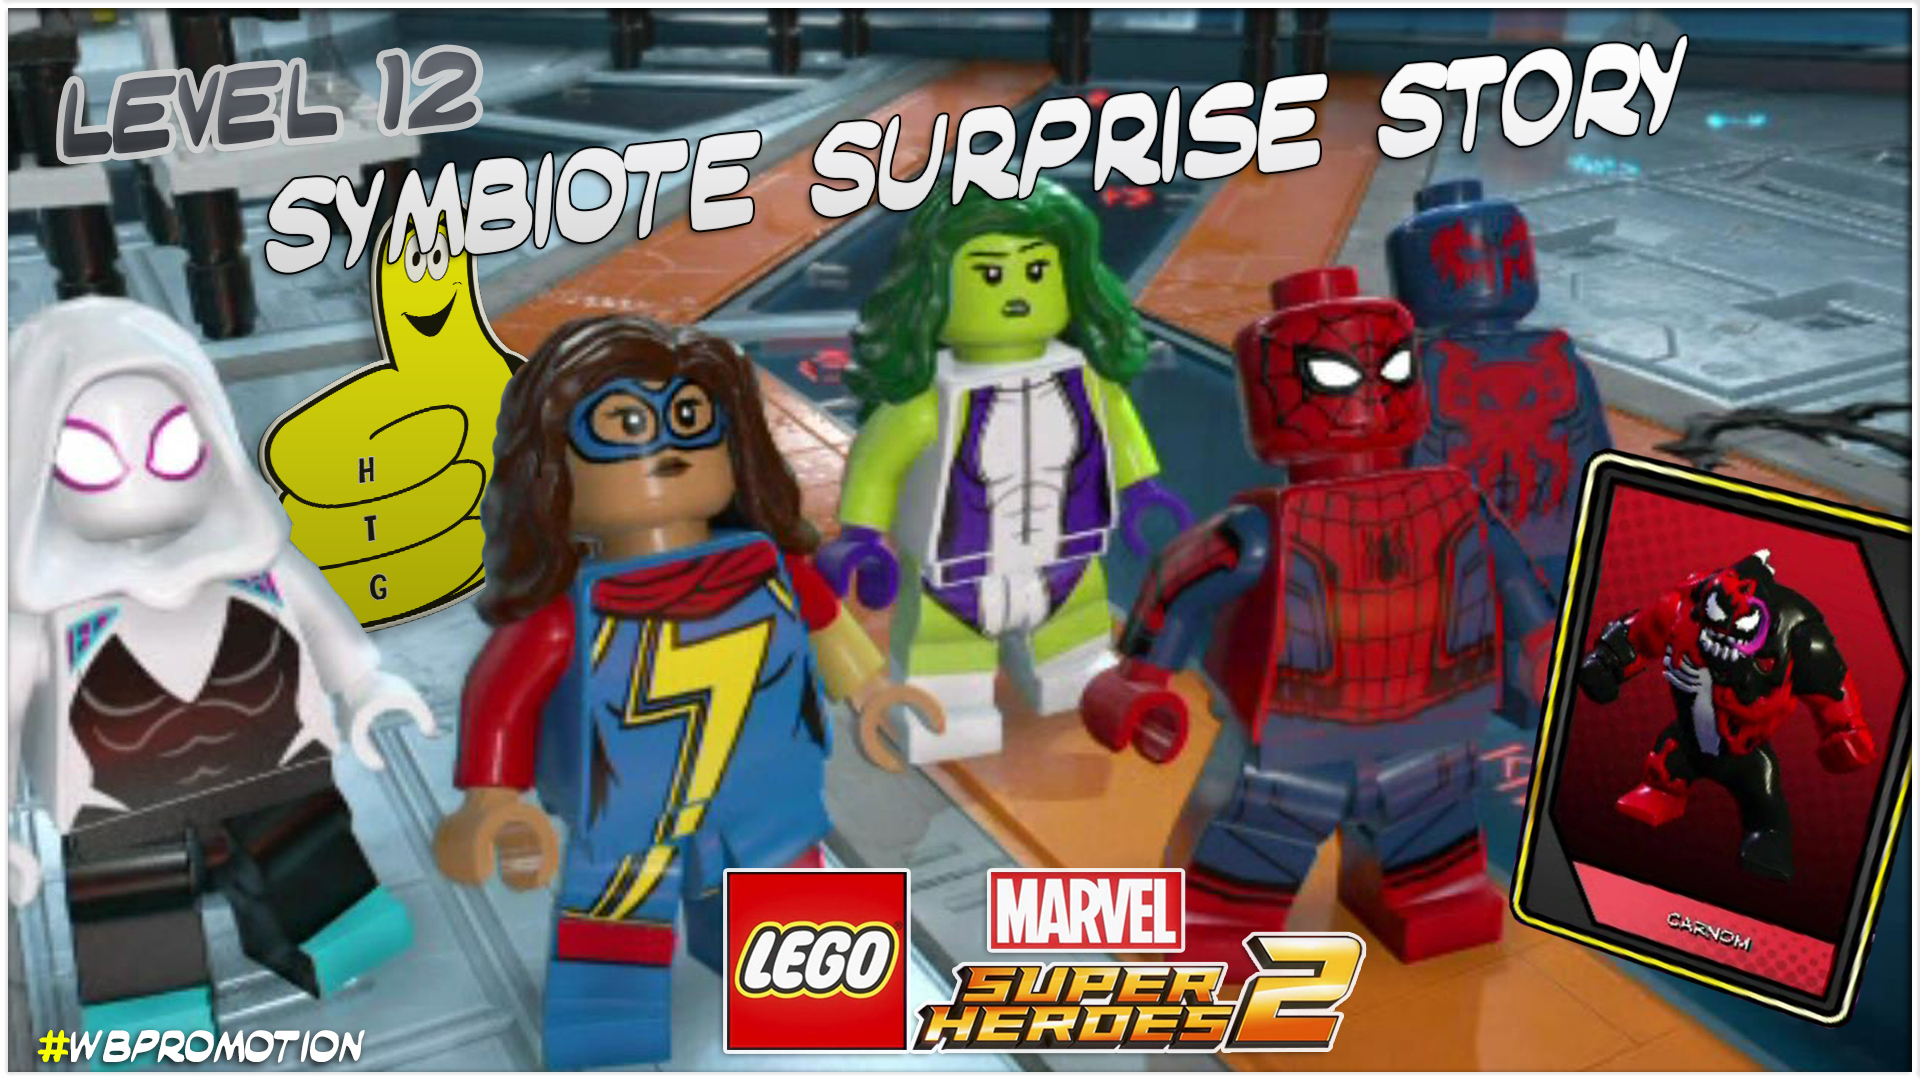 Lego Marvel Superheroes 2: Level 12 / Symbiote Surprise STORY – HTG